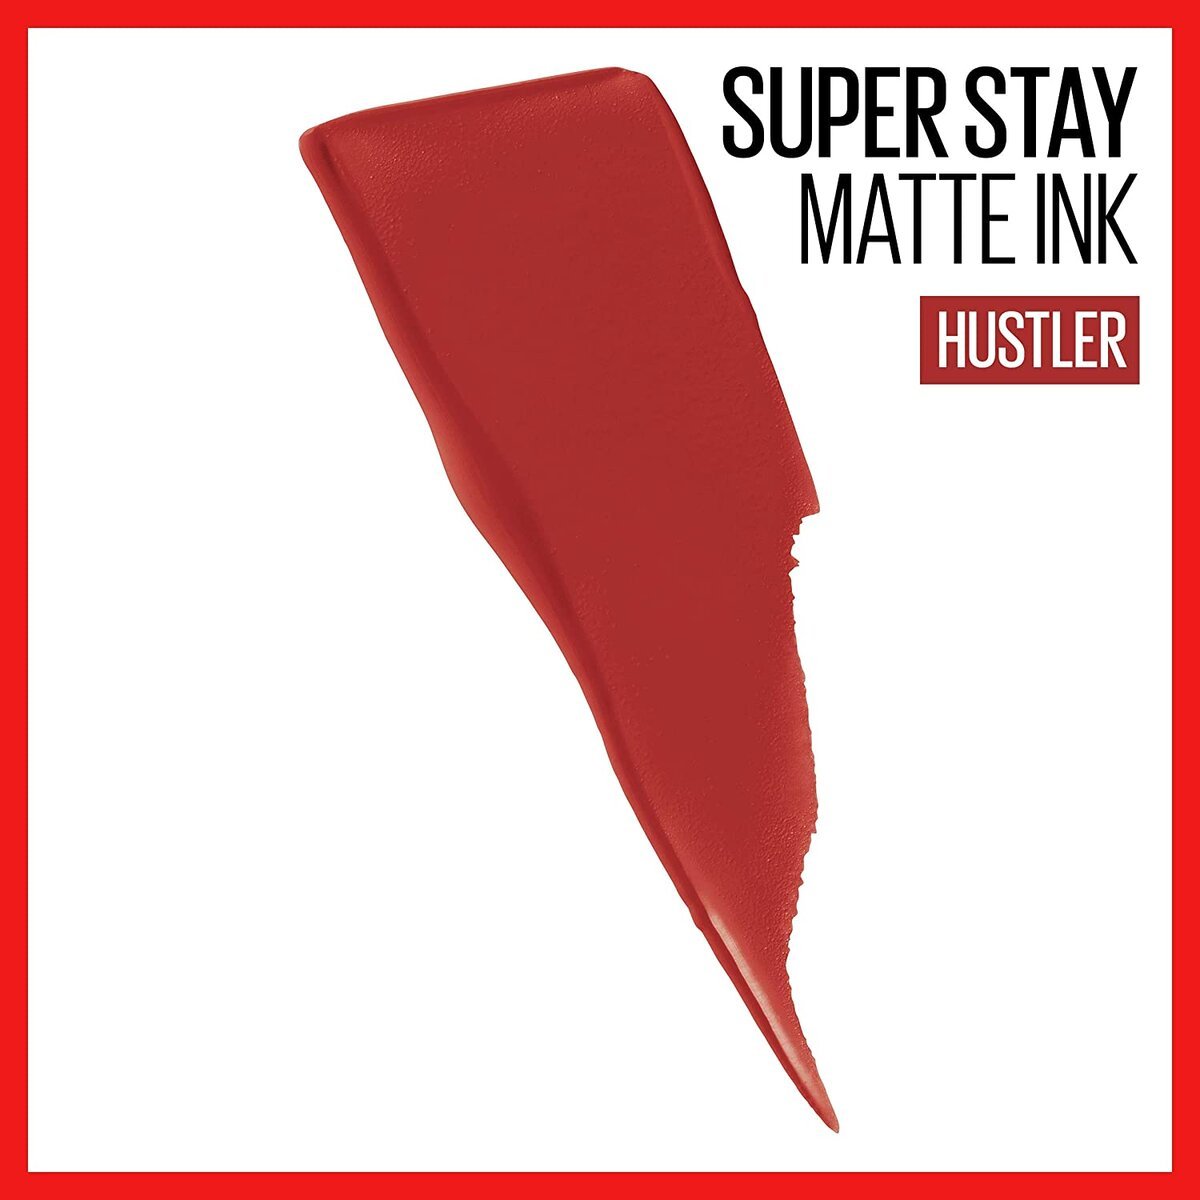 SUPERSTAY MATTE INK SPICED EDITION HUSTLER - MAYBELLINE